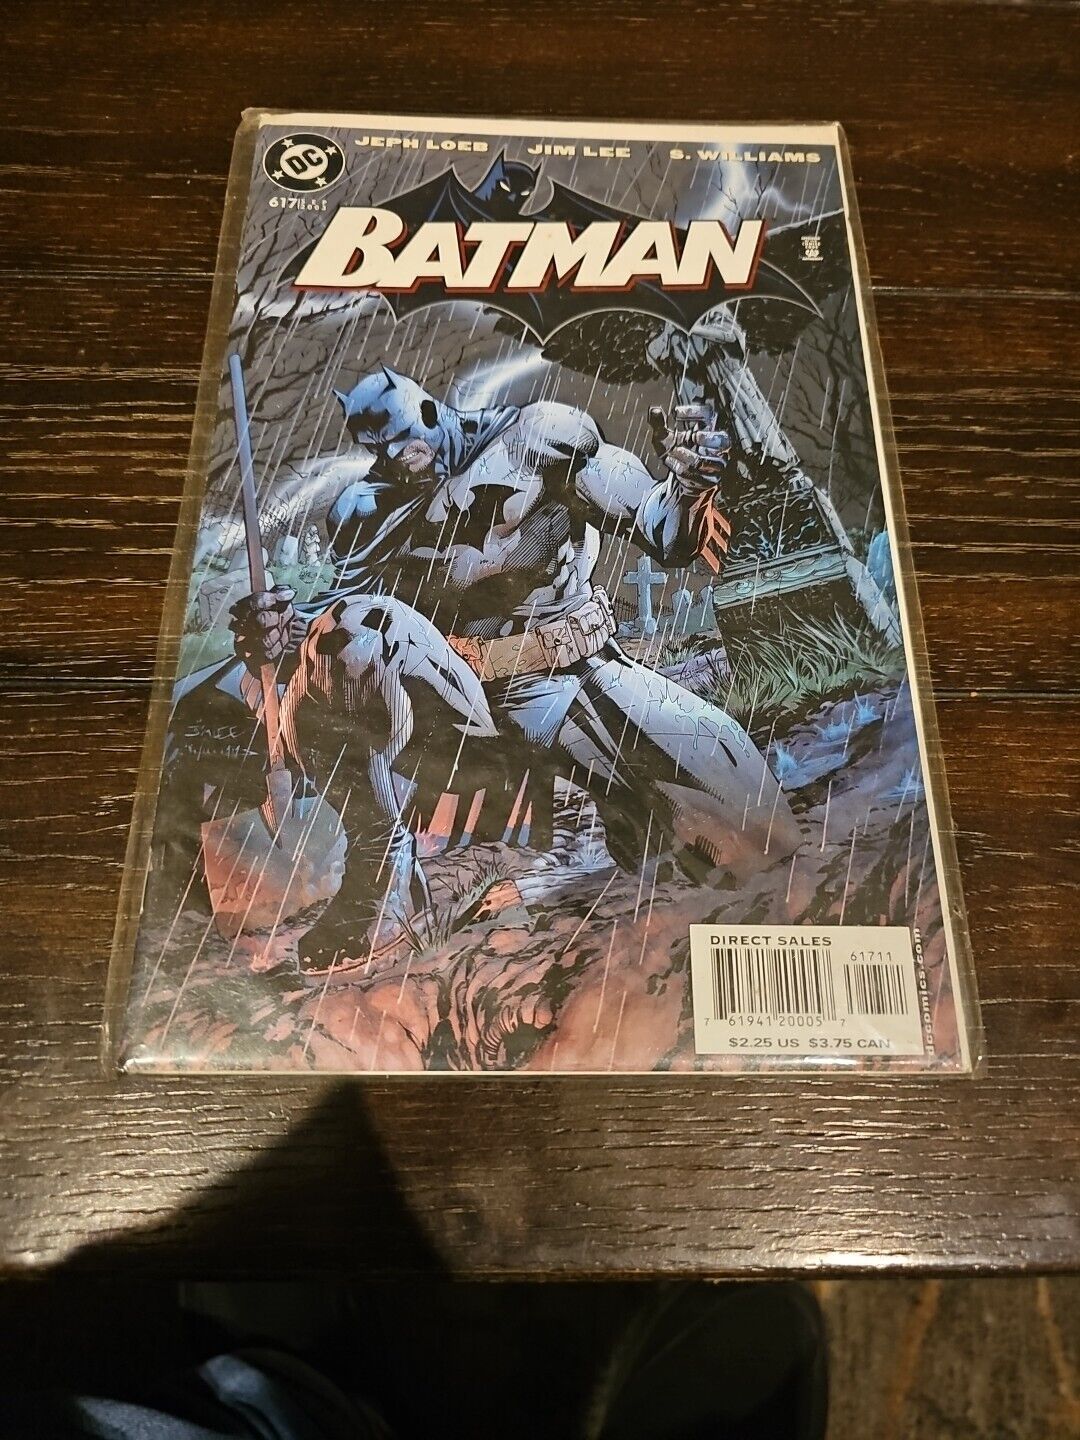 BATMAN #617 / 1ST PRINT / HUSH / JIM LEE / JEPH LOEB / DC COMICS / 2003